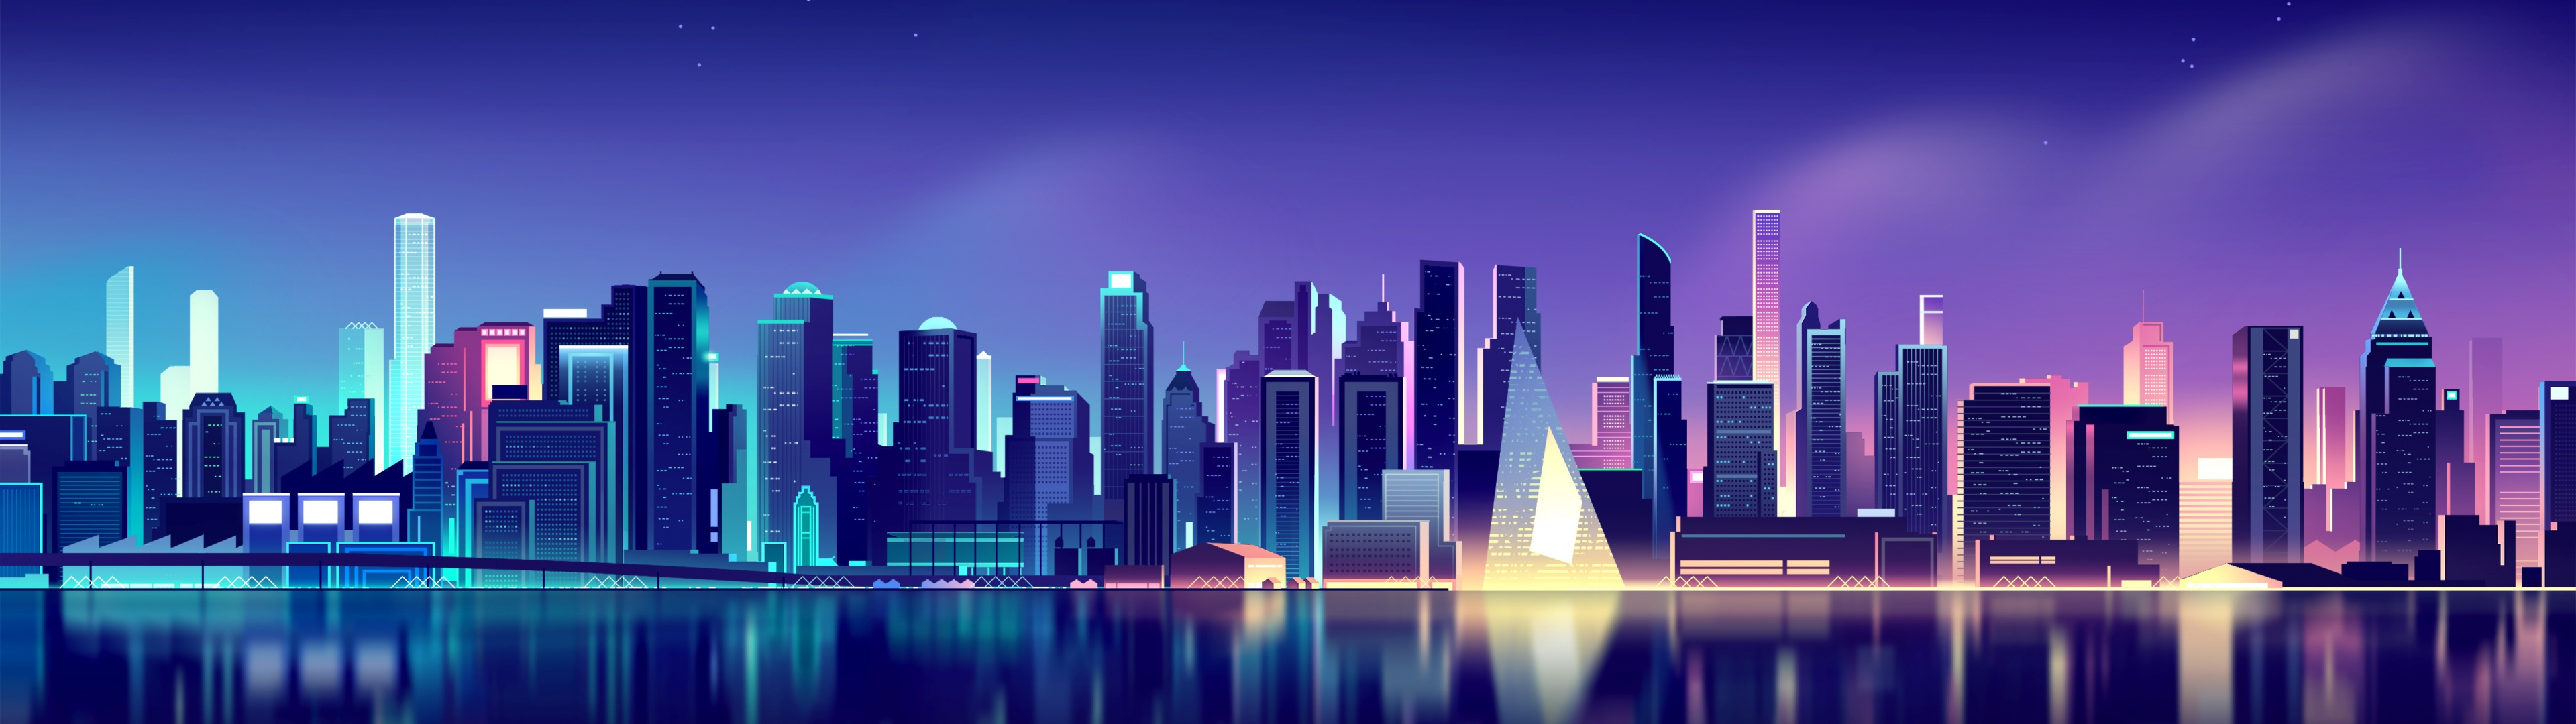 Cityscape Neon: Những khung cảnh đô thị ánh sáng neon luôn có sức hấp dẫn đặc biệt với những người yêu thích phong cách hiện đại của thành phố. Bức ảnh này sẽ đưa bạn đến với một thế giới đẹp lung linh với những ánh đèn neon sặc sỡ, tạo nên một không gian sống động và ấn tượng.